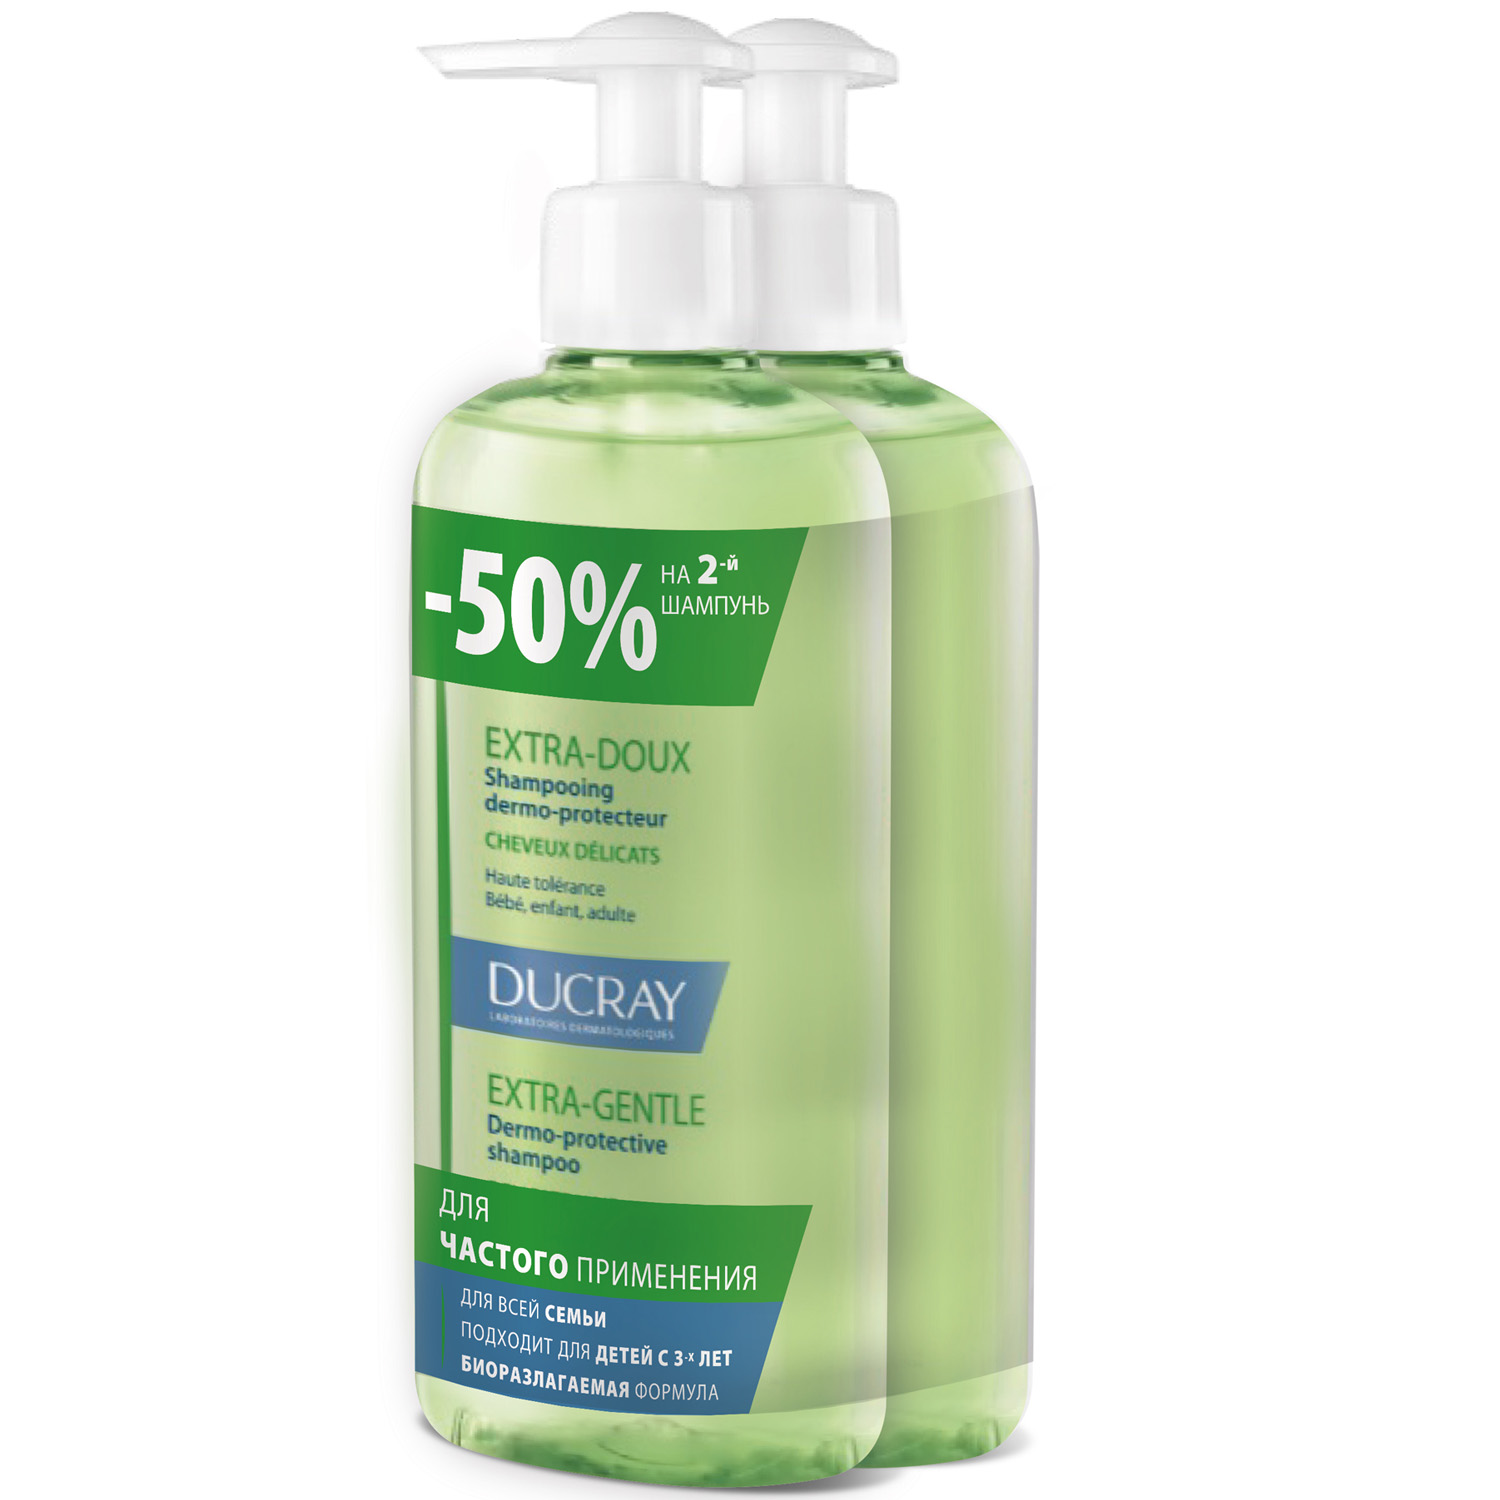 Ducray Набор: защитный шампунь для частого применения, 400 мл х 2 шт (Ducray, Extra-Doux)